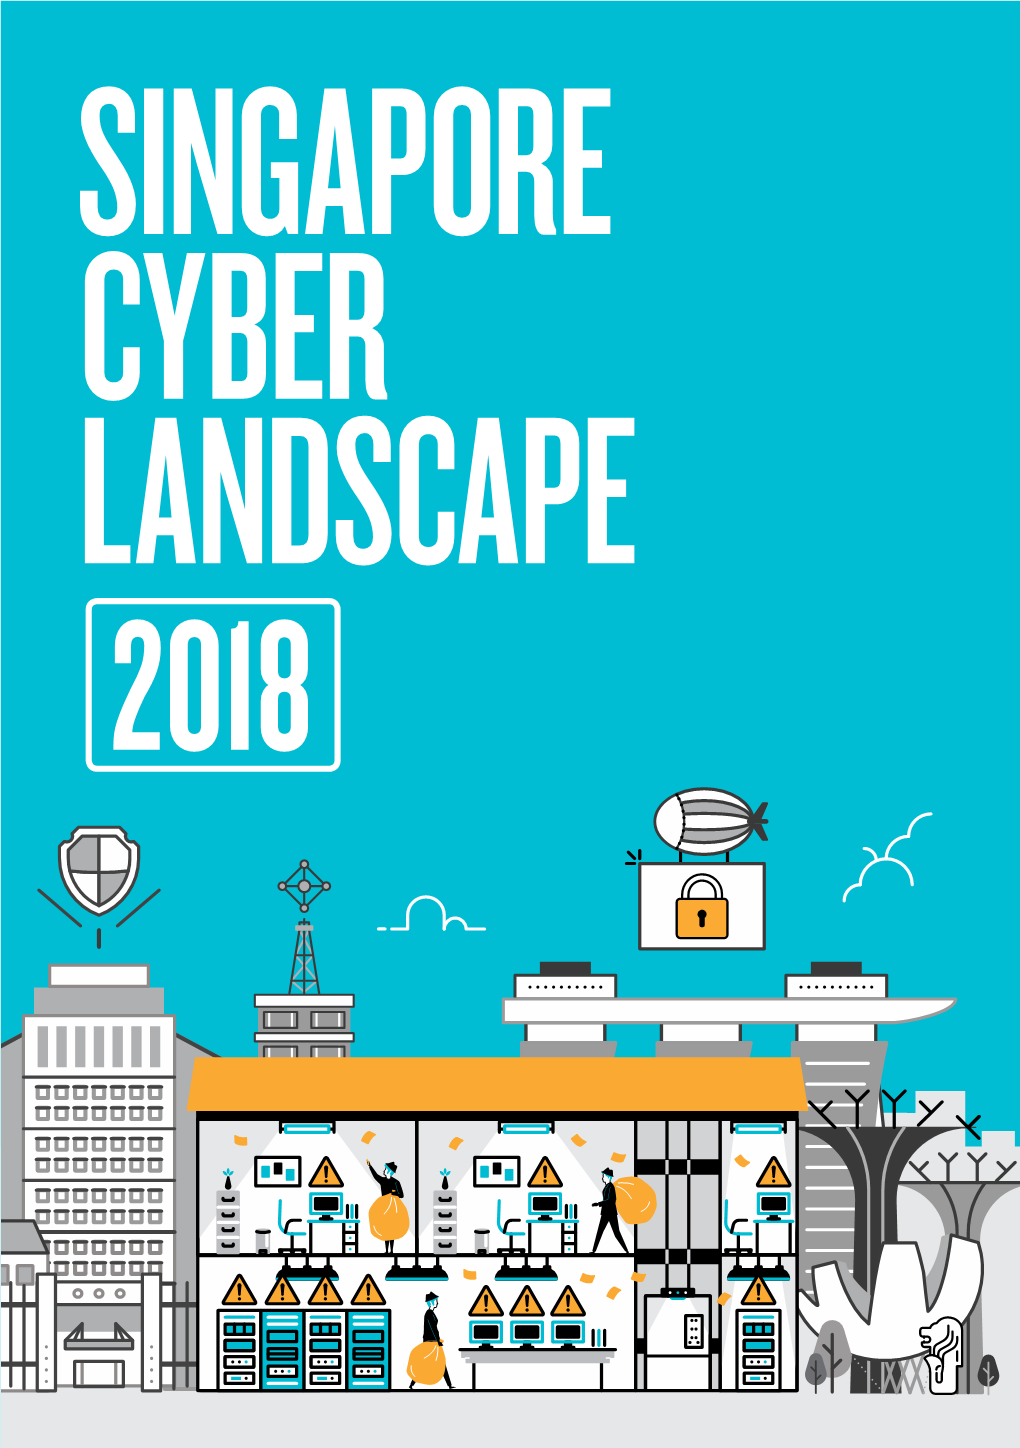 Singapore Cyber Landscape 2018 Contents